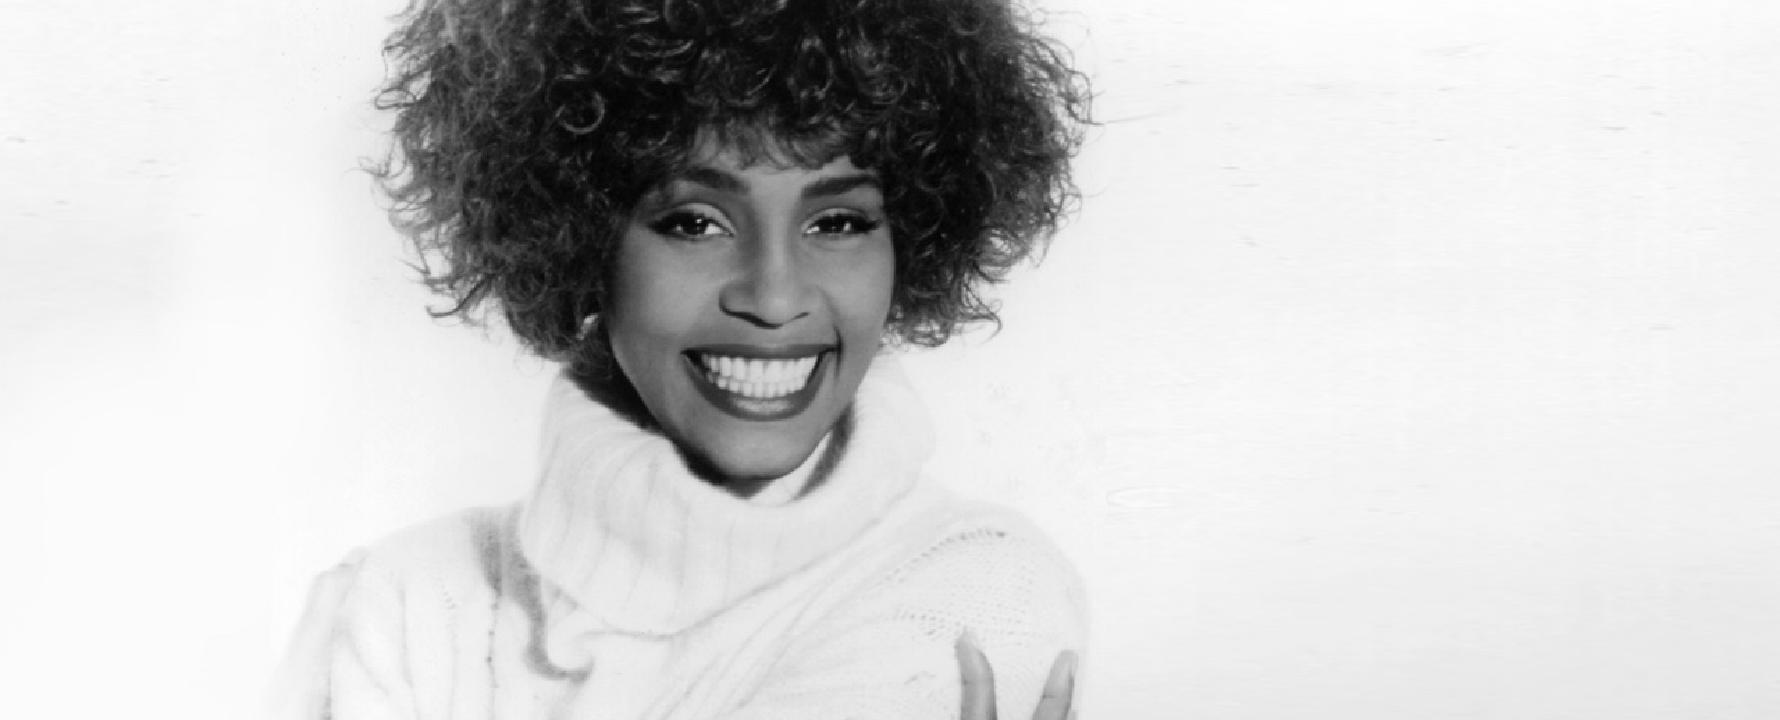 Photographie promotionnelle de Whitney Houston.